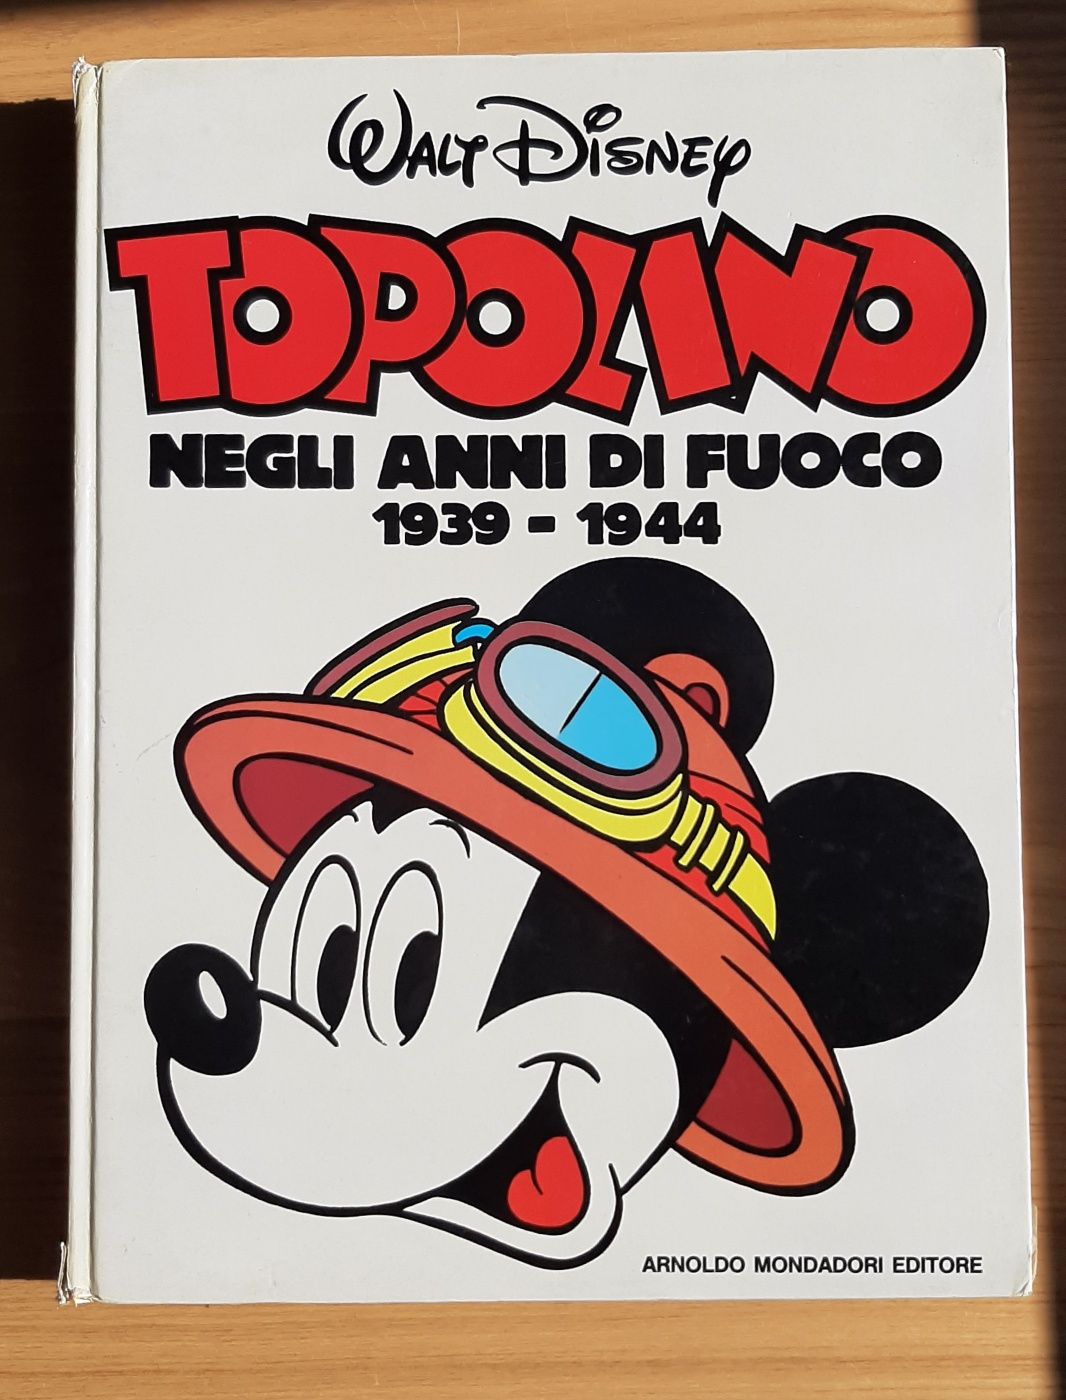 Walt Disney TOPOLINO Negli anni di fuoco 1939 - 1944 Arnoldo Mondadori